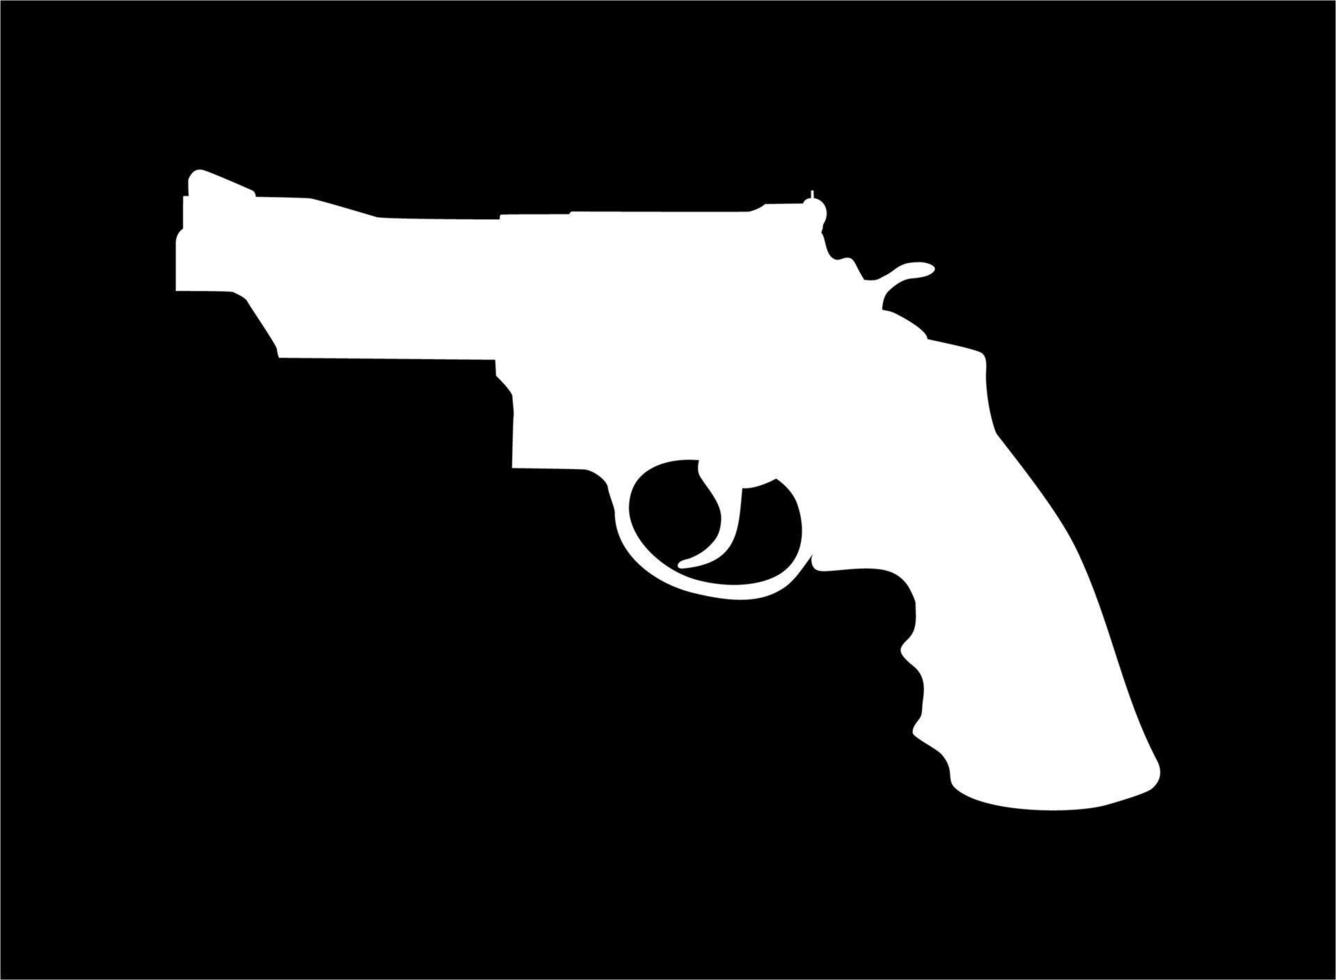 silhueta de arma, pistola em vackground preto para logotipo, pictograma, site ou elemento de design gráfico. ilustração vetorial vetor